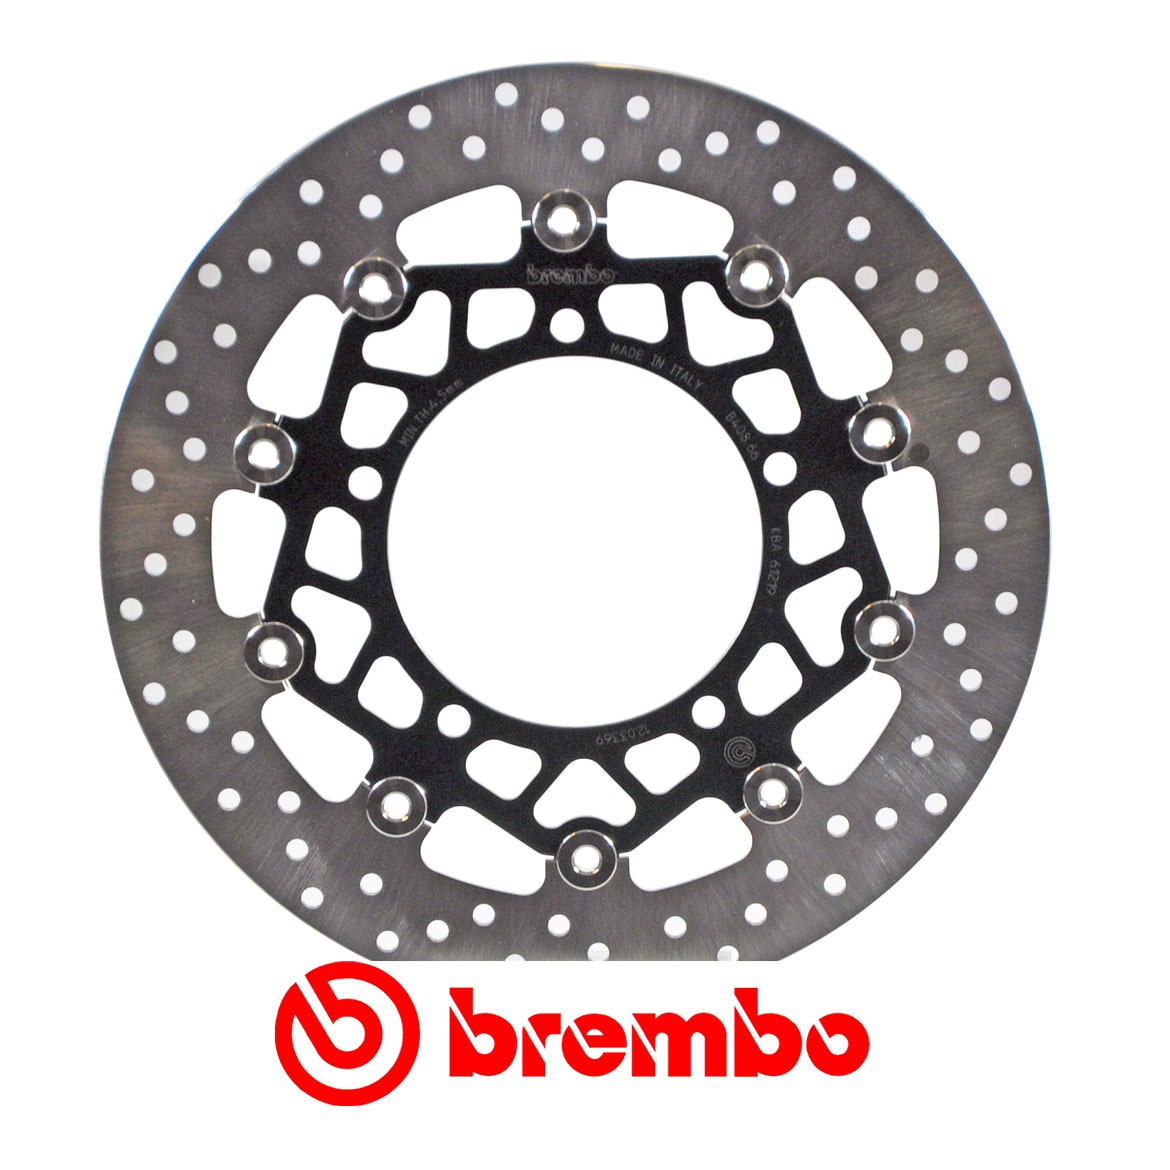 Disque de frein avant Brembo pour 600 GSR (06-10) 750 GSR (11-14)